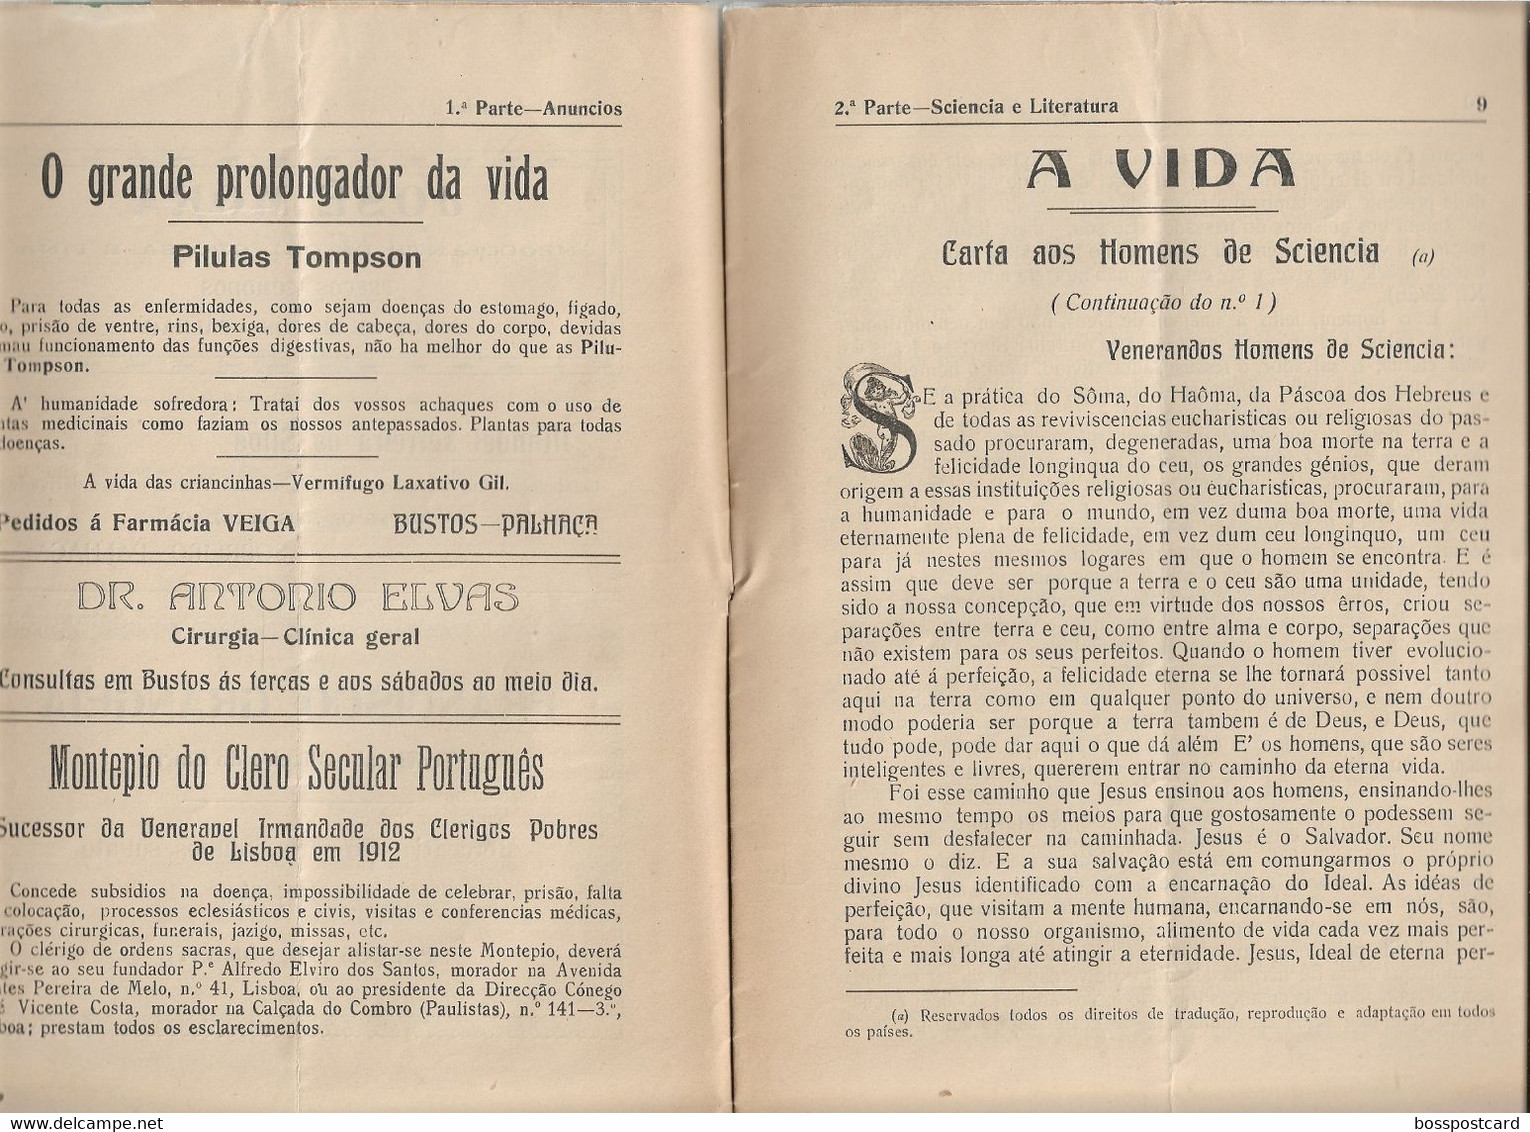 Oliveira Do Bairro - Esperança Nº 2, 26 De Maio De 1925 - Sobreira - Palhaça - Jornal - Imprensa. Aveiro. Portugal. - Algemene Informatie